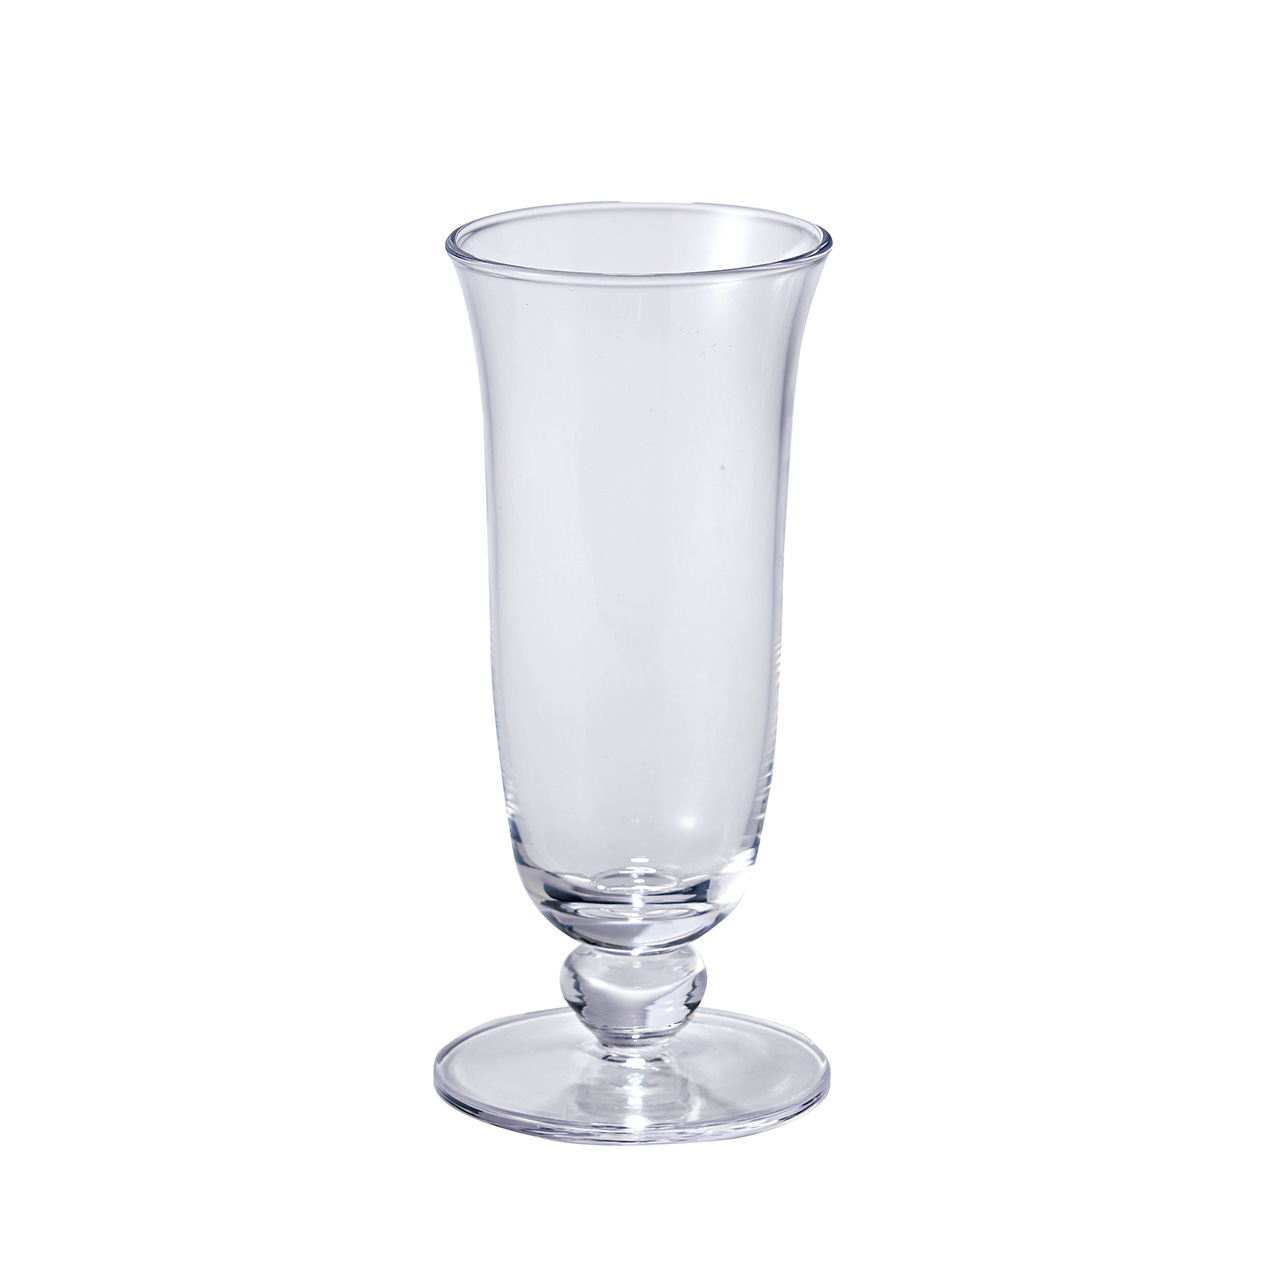 マイフラ 通販/SEVA ニーノガラス 花瓶 ガラス 花器 GW000520(直径 約7×高さ 約16cm): 花器 ・花瓶・フレーム・天然素材ベース/全国にMAGIQ、花器、花資材などをお届けします。